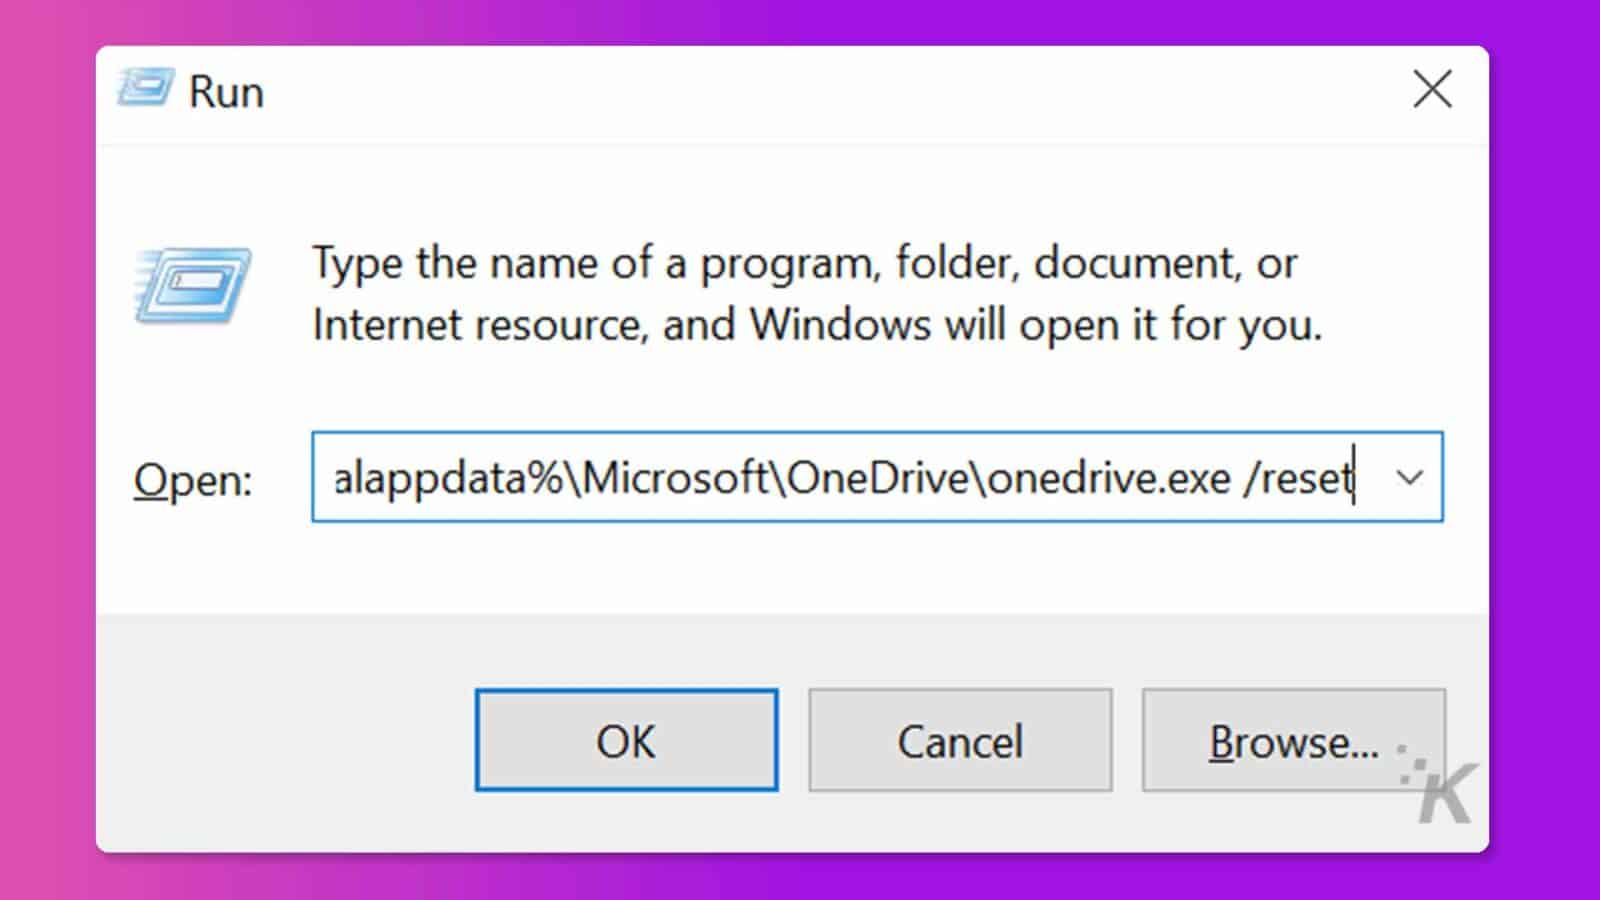 Gambar menunjukkan prompt yang meminta pengguna untuk mengetikkan nama program, folder, dokumen, atau sumber daya Internet untuk membukanya di Windows. Teks Lengkap: Jalankan X Ketikkan nama program, folder, dokumen, atau sumber daya Internet, dan Windows akan membukanya untuk Anda. Buka: alappdata%MicrosoftOneDriveonedrive.exe /reset v OK Batal Telusuri ... . K